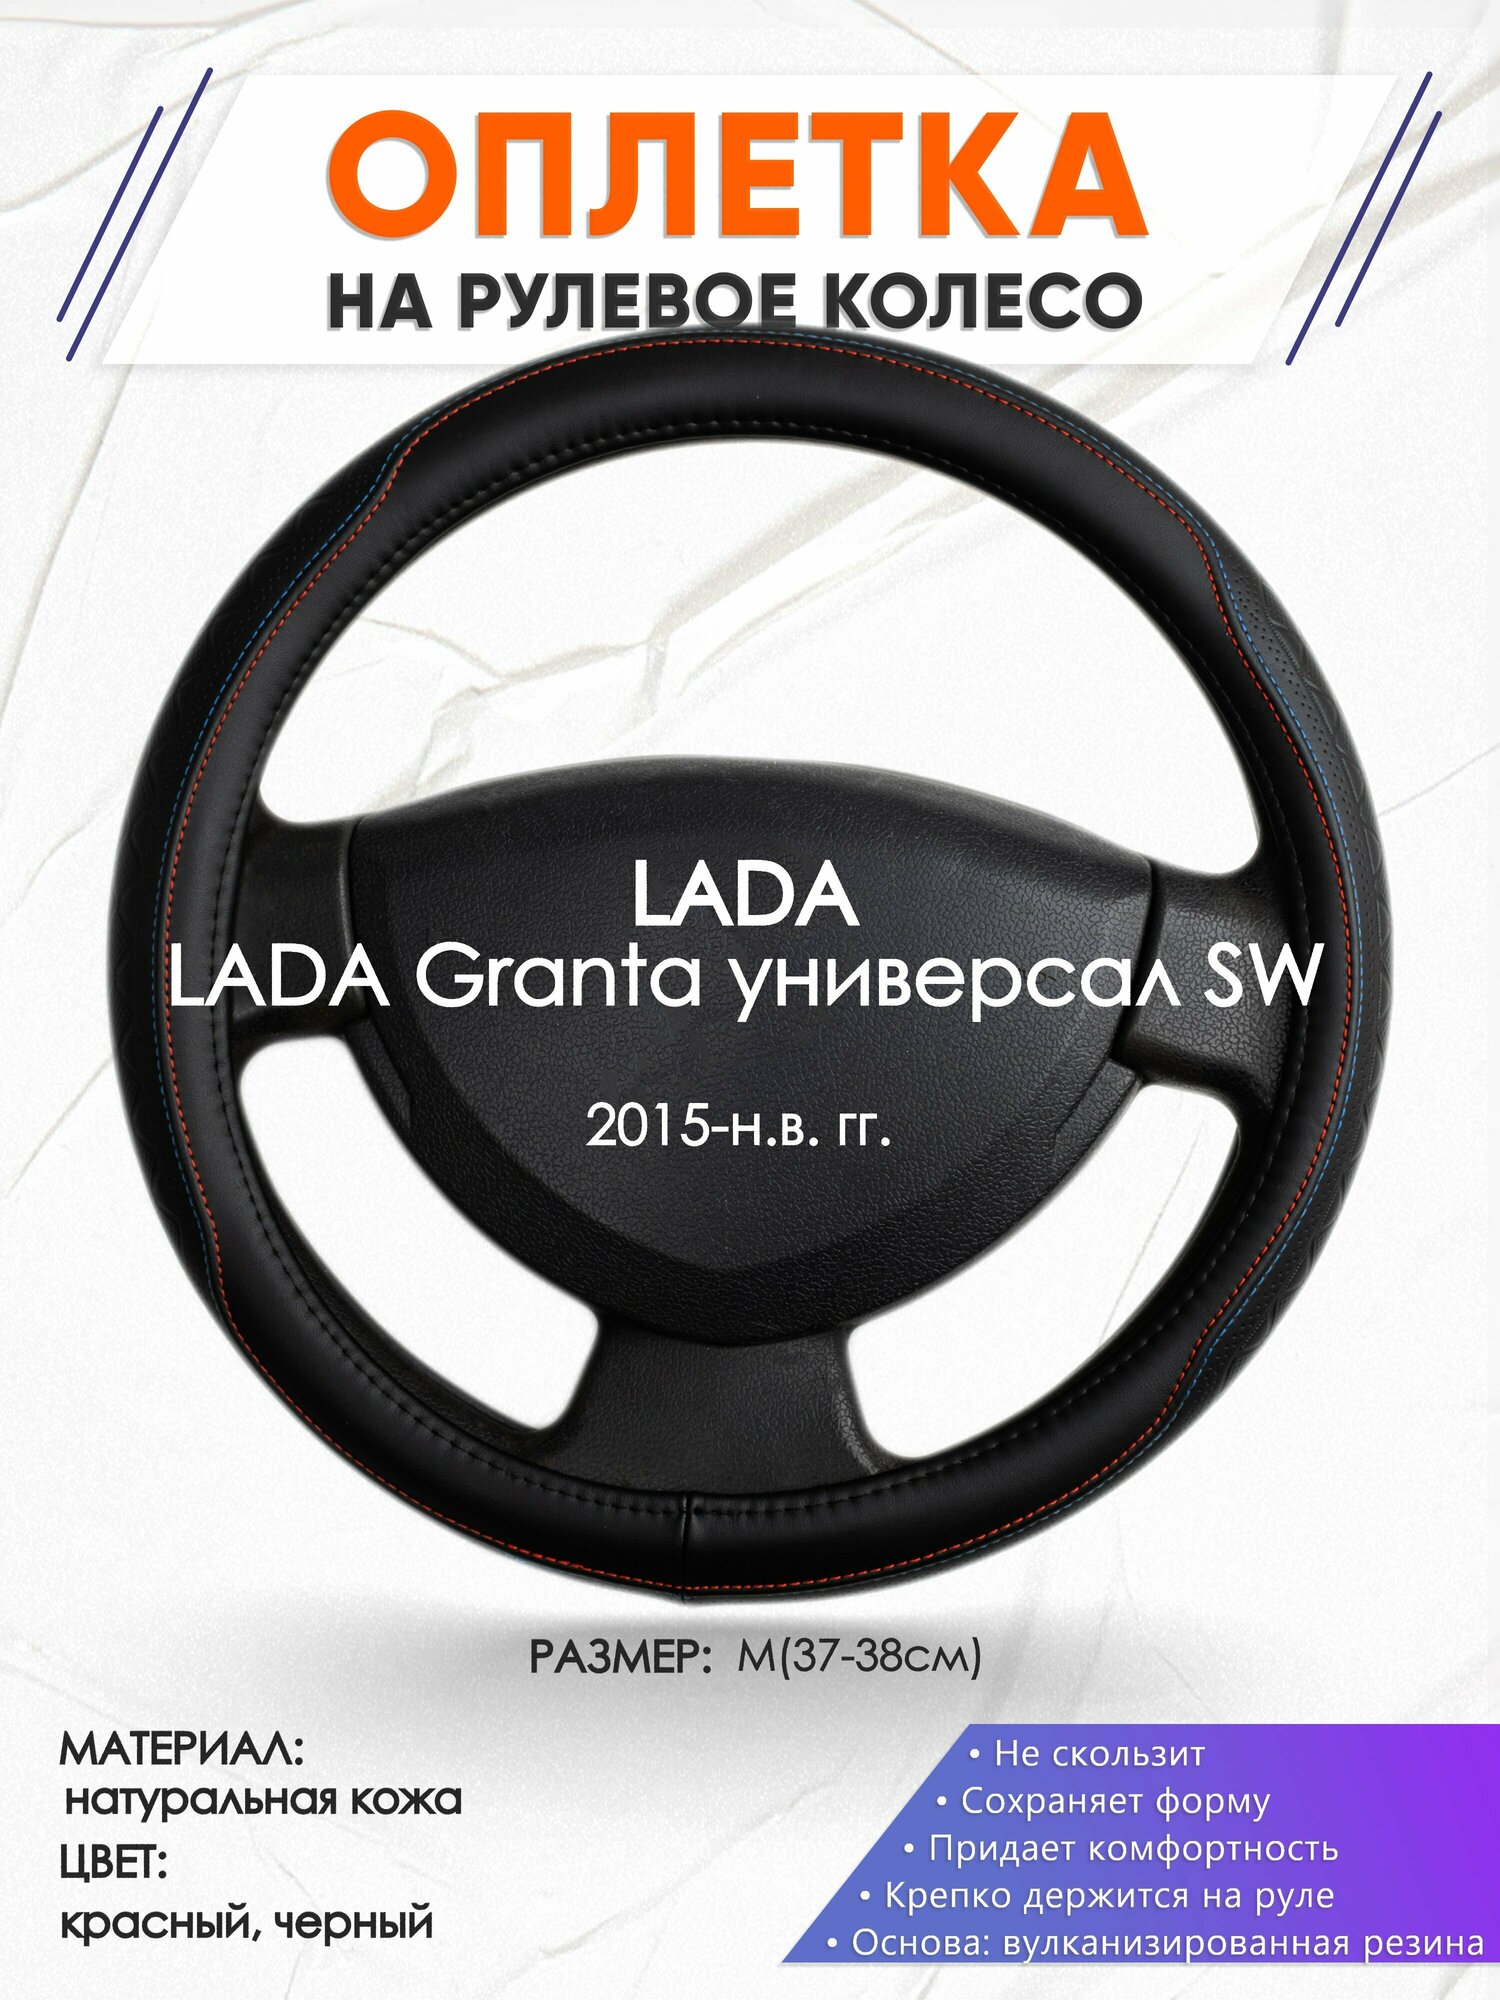 Оплетка наруль для LADA Granta универсал SW(Лада Гранта) 2015-н. в. годов выпуска, размер M(37-38см), Натуральная кожа 89